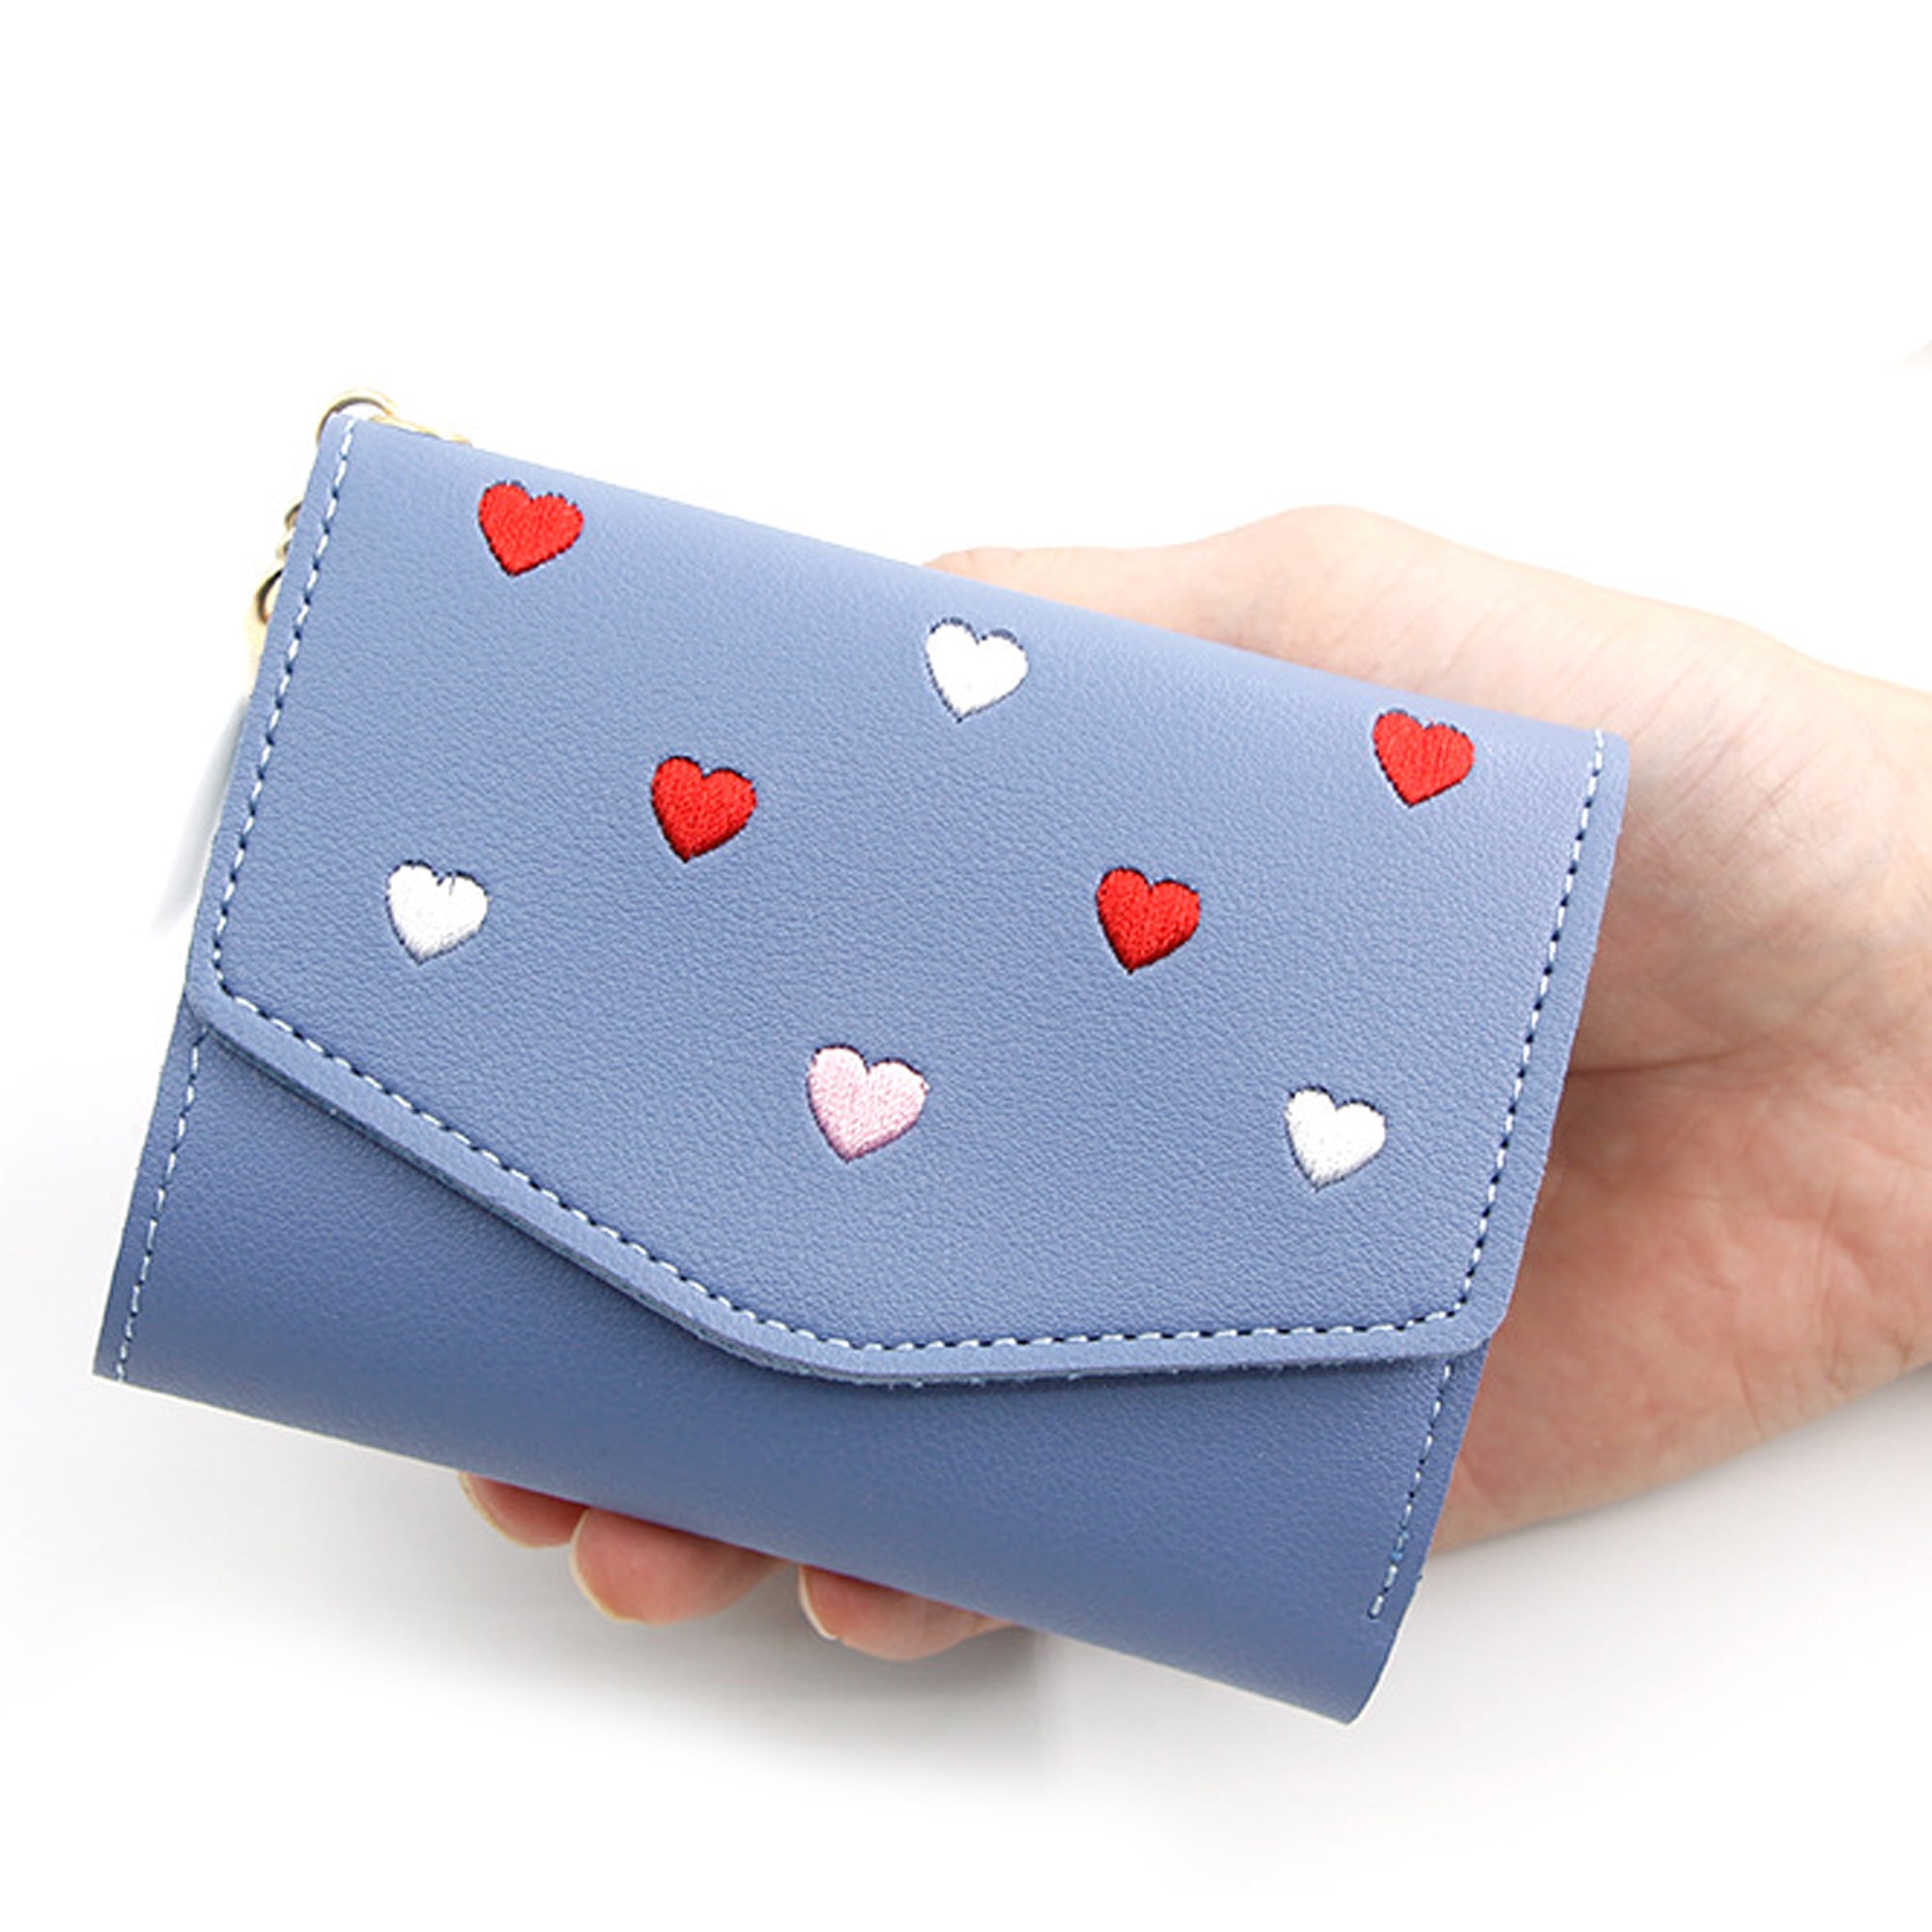 Luxury Cute Love Heart Women's Short Wallet Lady Purse with Card